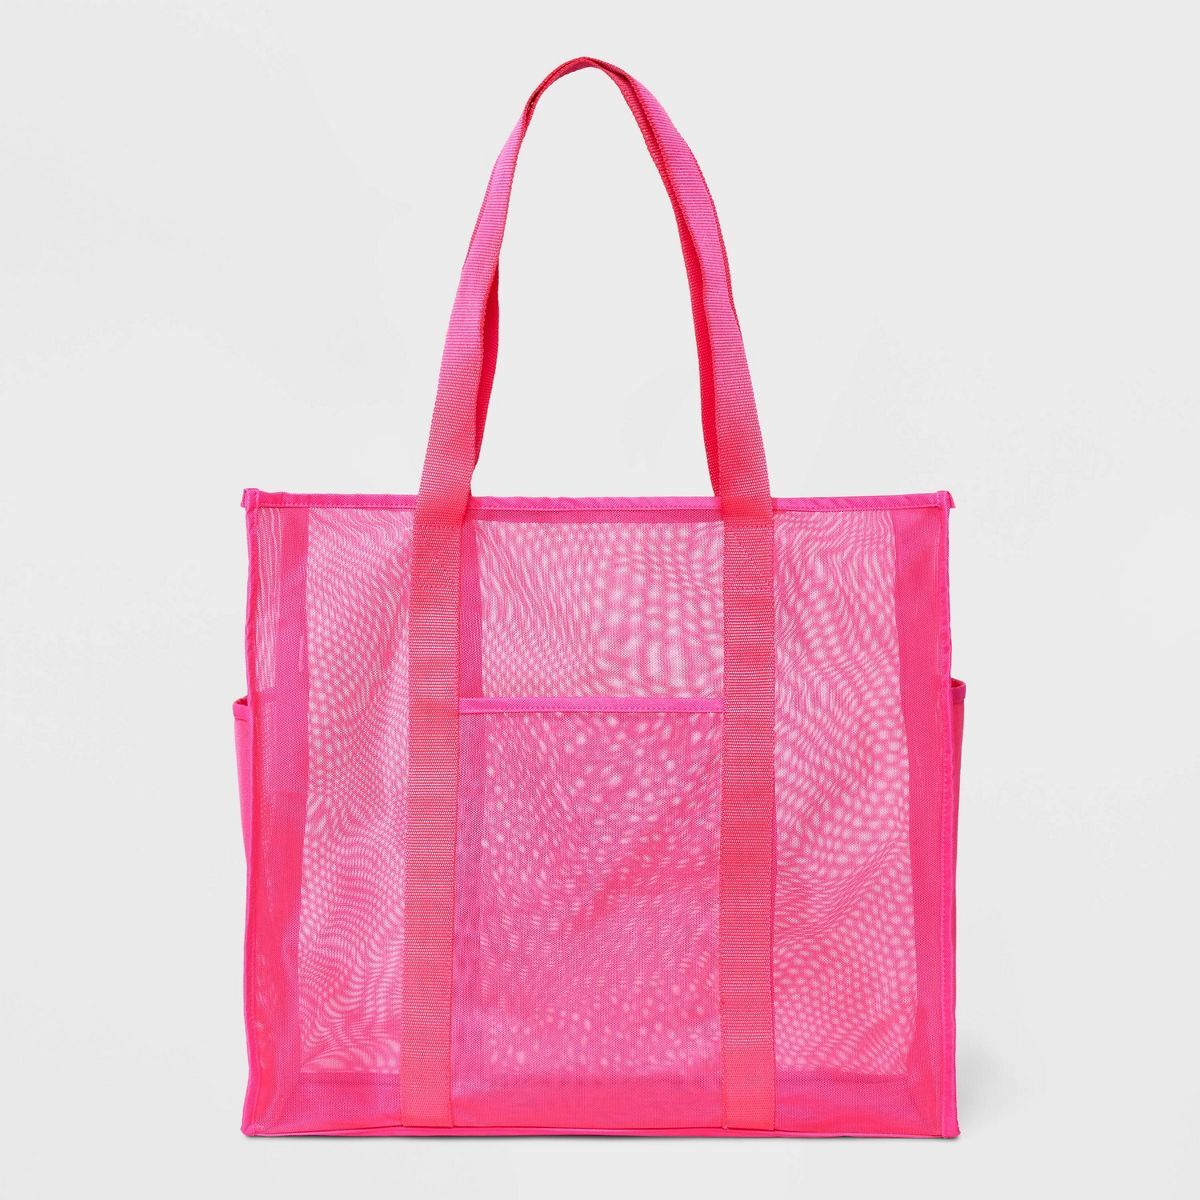 Mesh Tote Handbag - Shade & Shore™ | Target